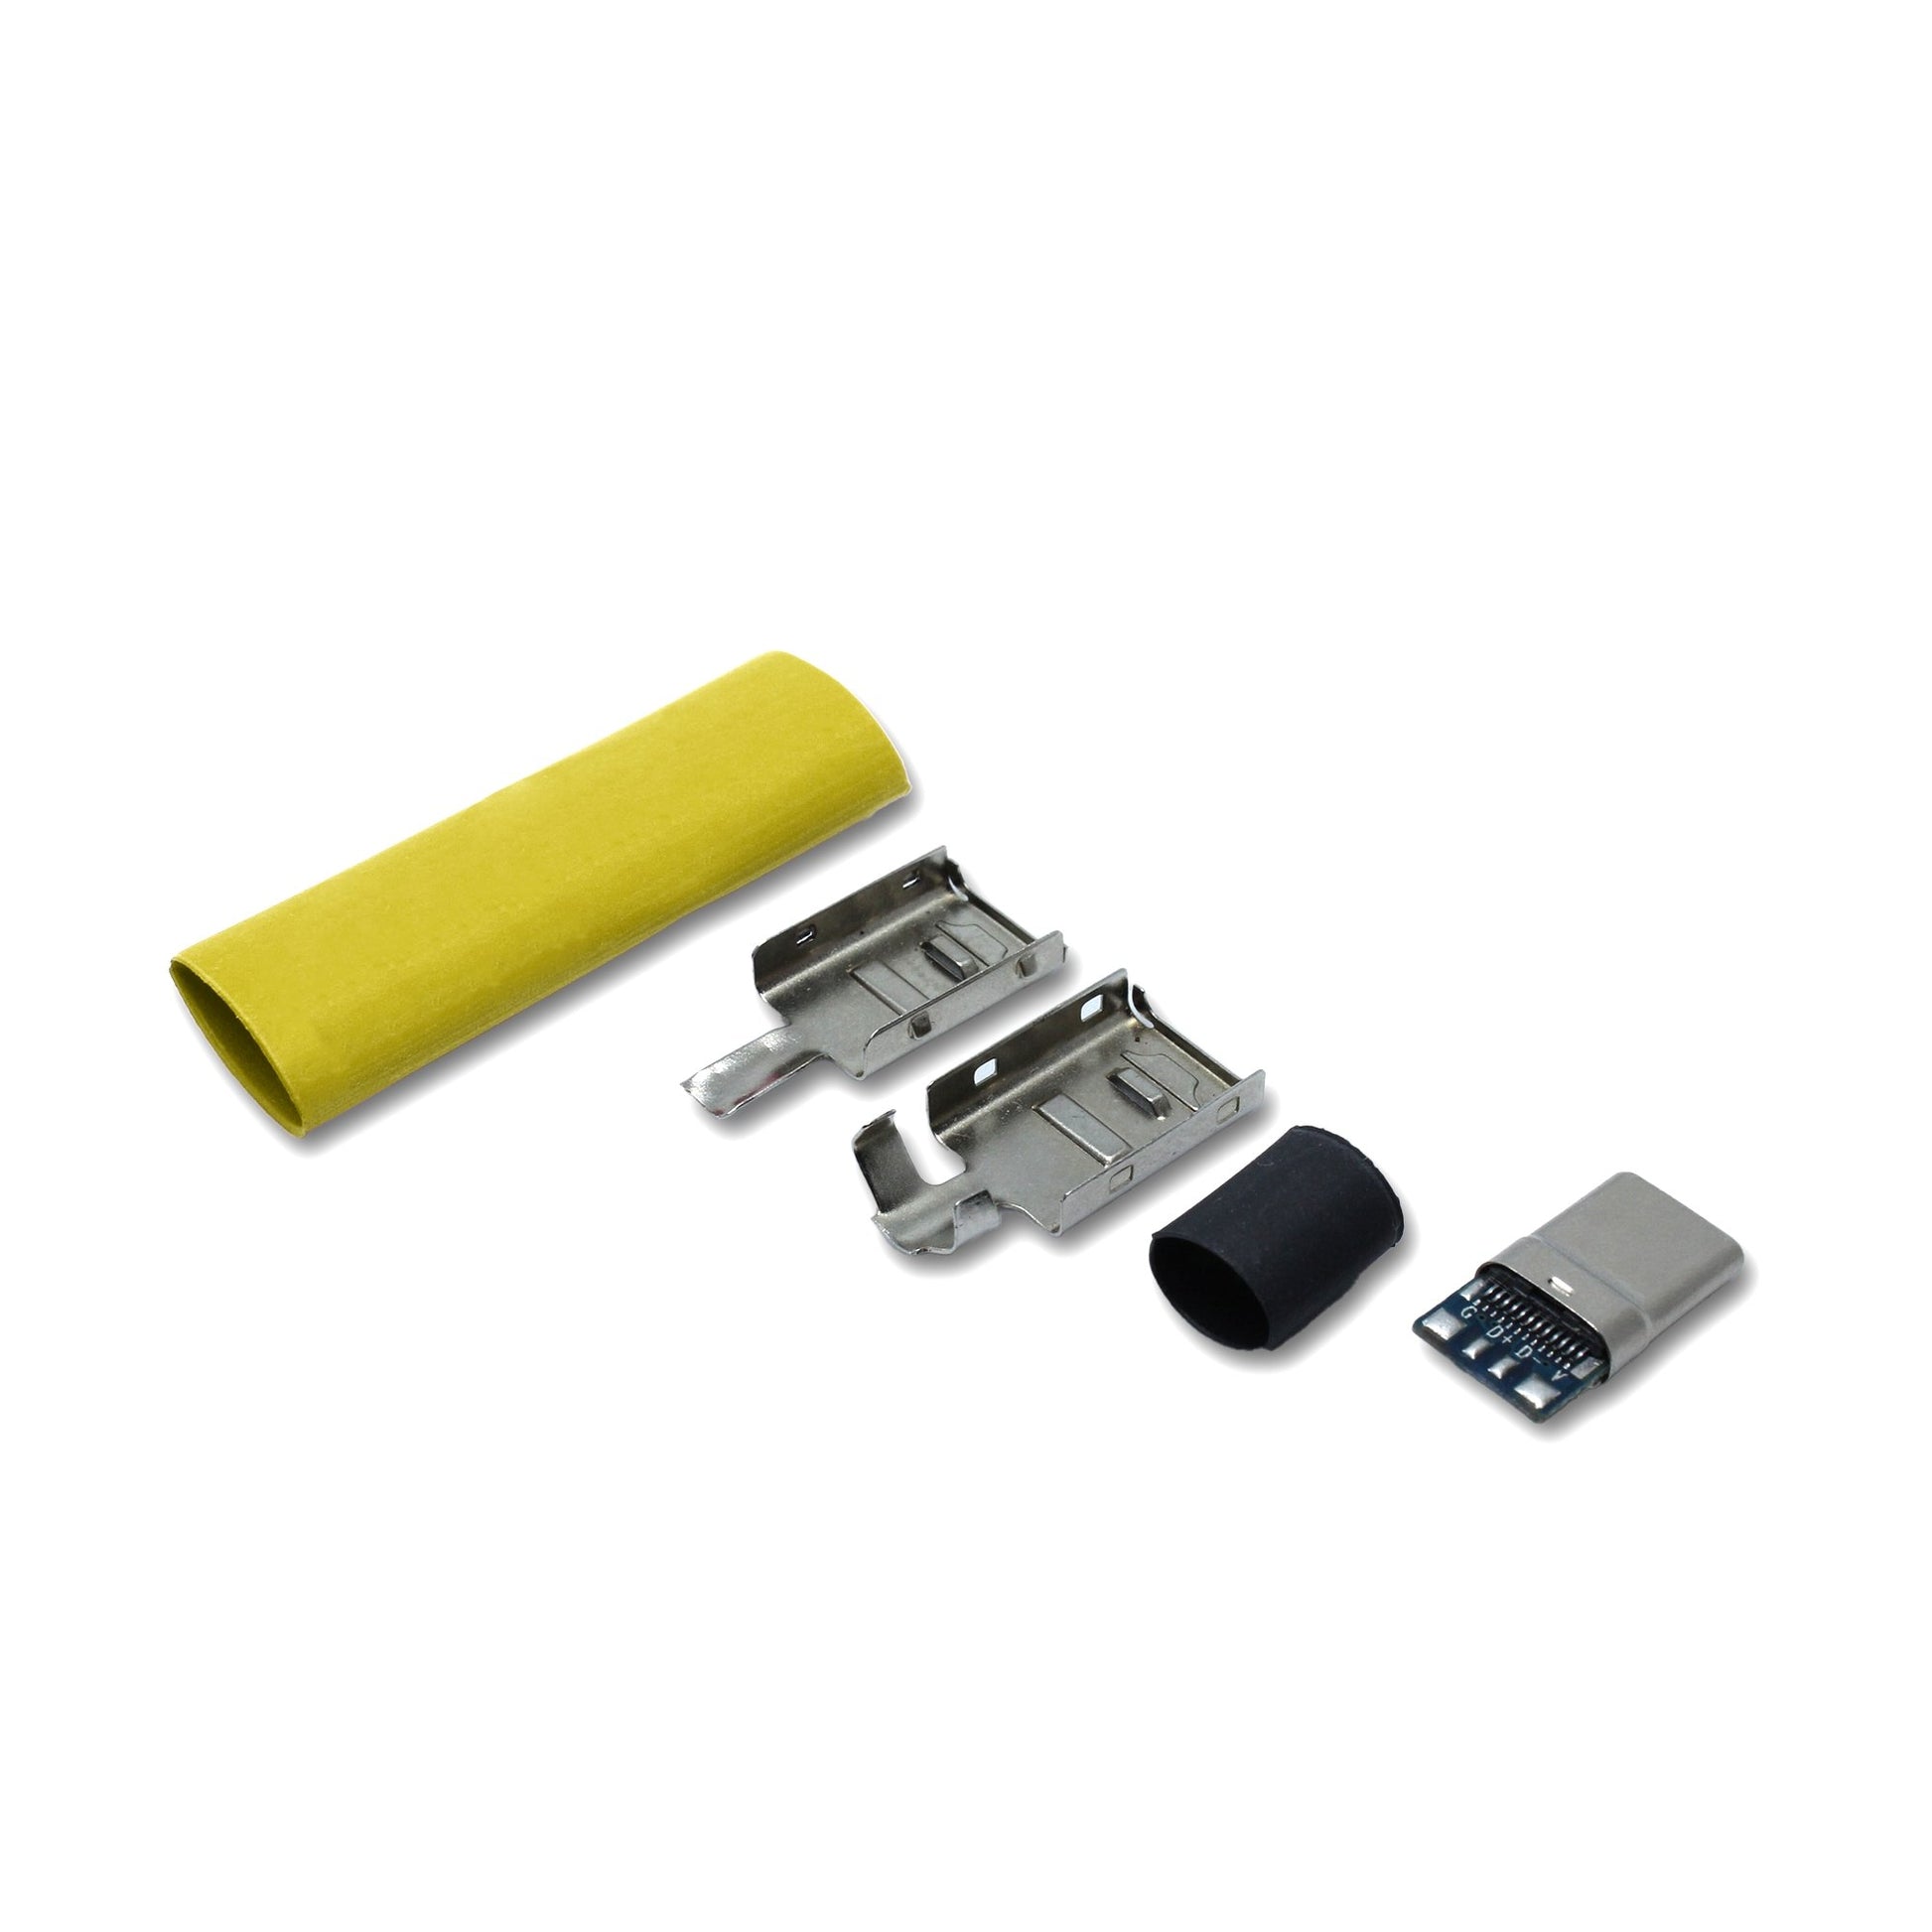 EIn recable USB C Host Stecker Set mit Schrumpfschlauch in der Farbe gelb